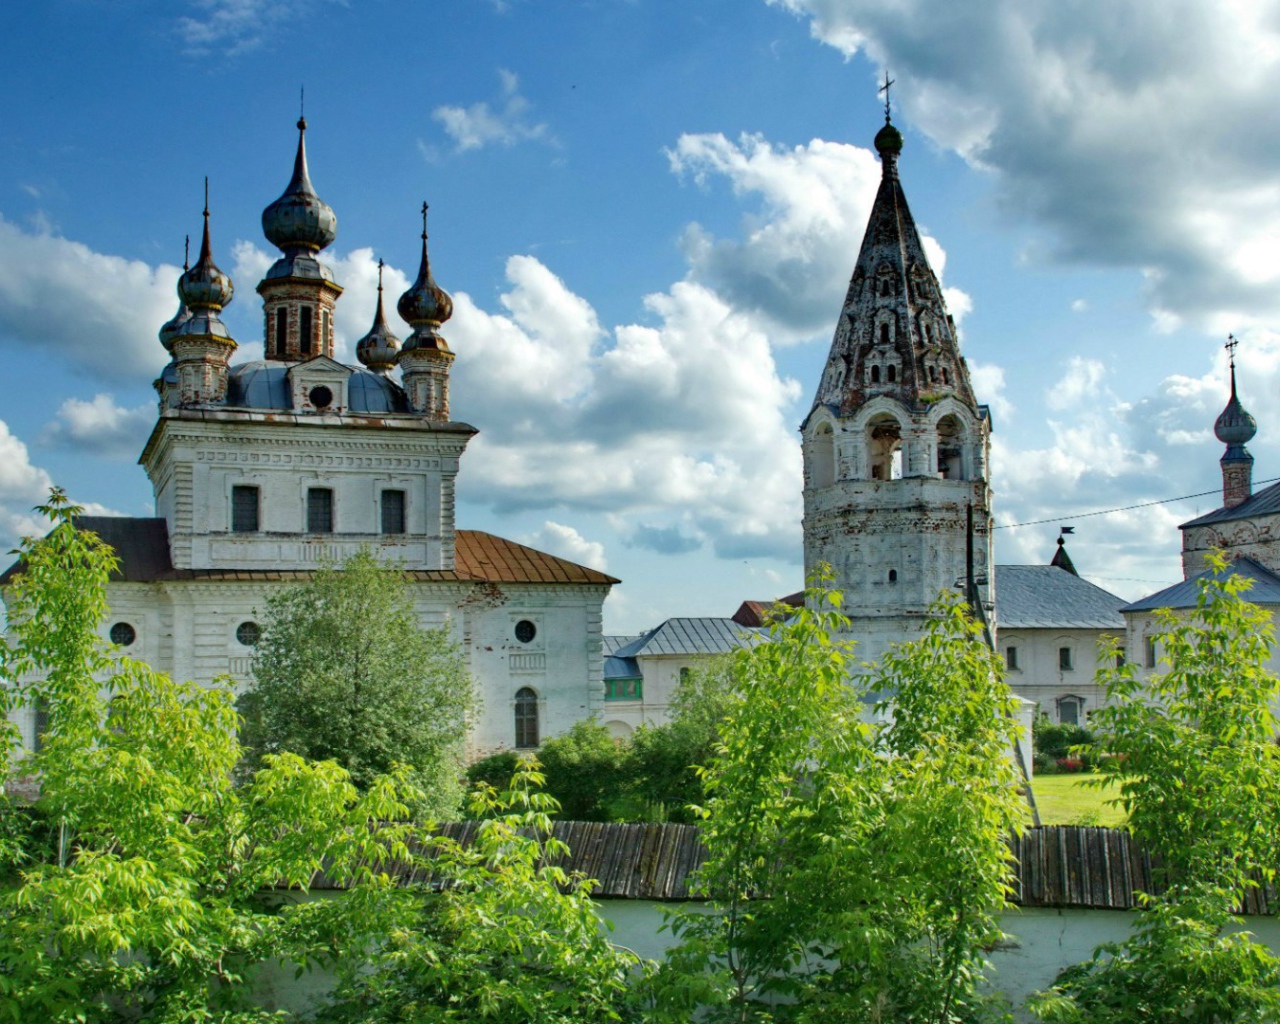 Михайло-Архангельский монастырь в г. Юрьев-Польский, Россия